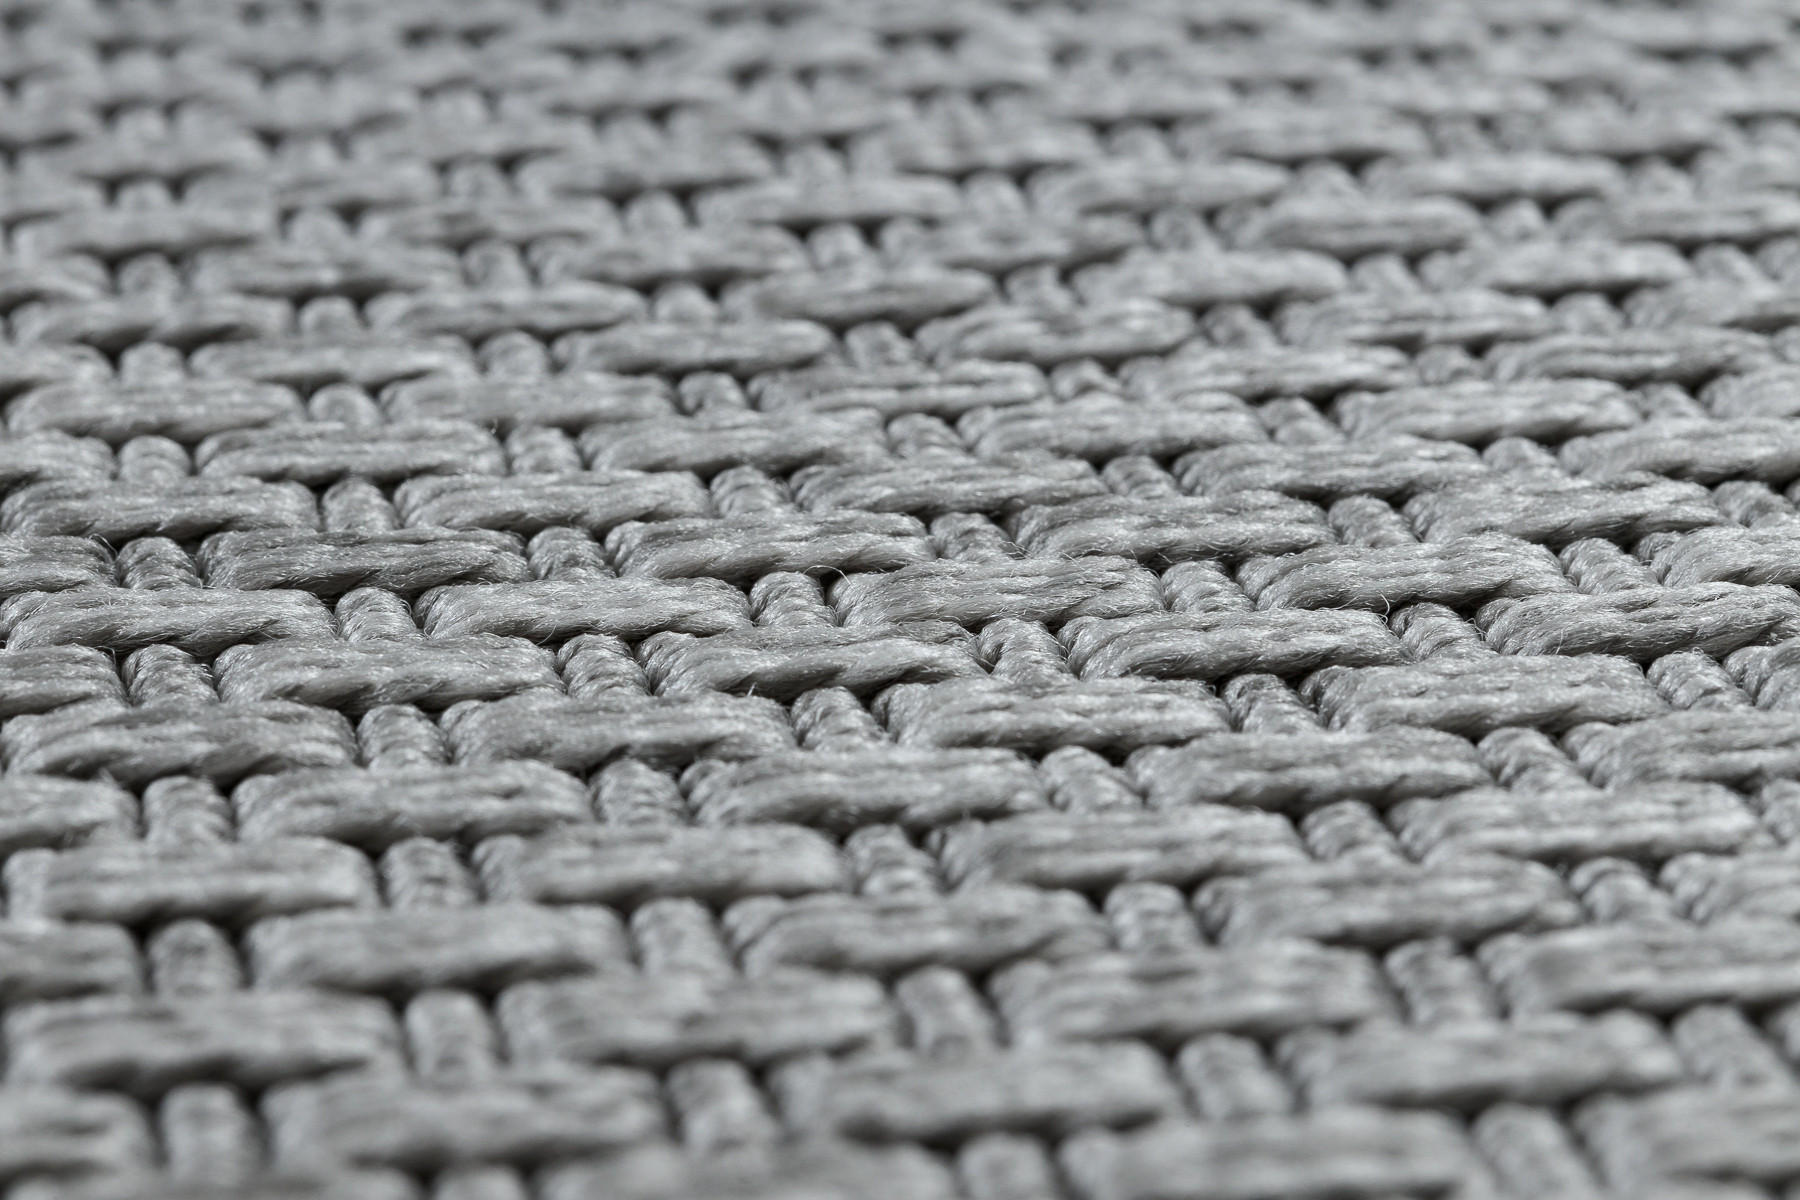 Šňůrkový koberec SIZAL TIMO 6272 světle šedý